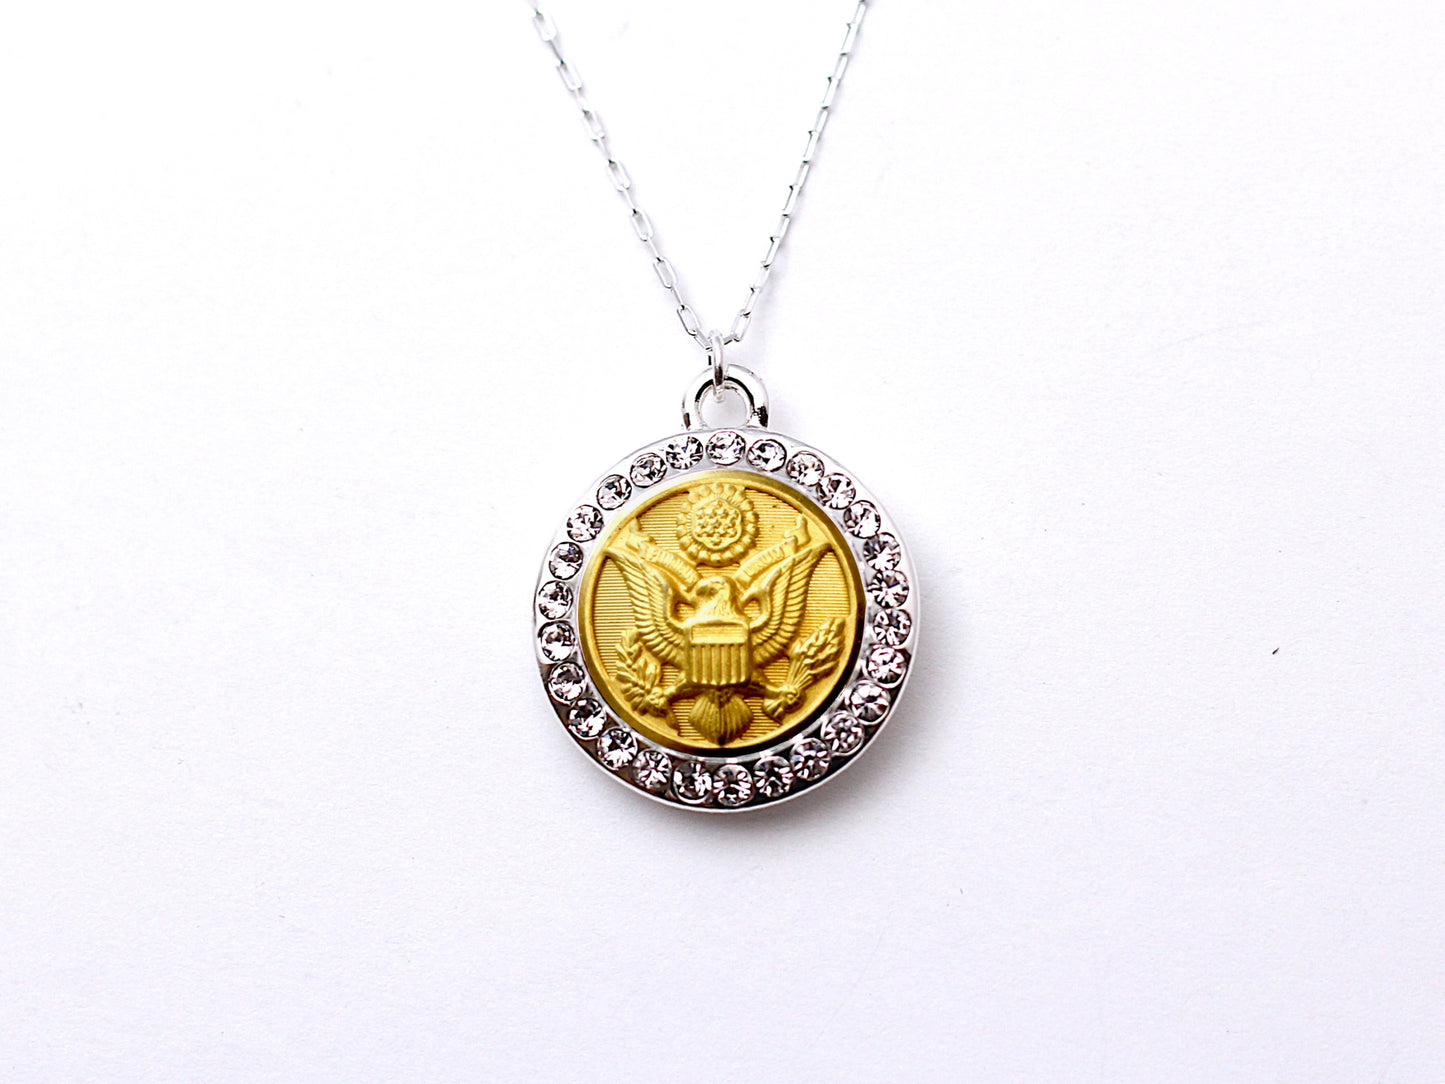 Army Button Necklace - Small Rhinestone Silver Pendant